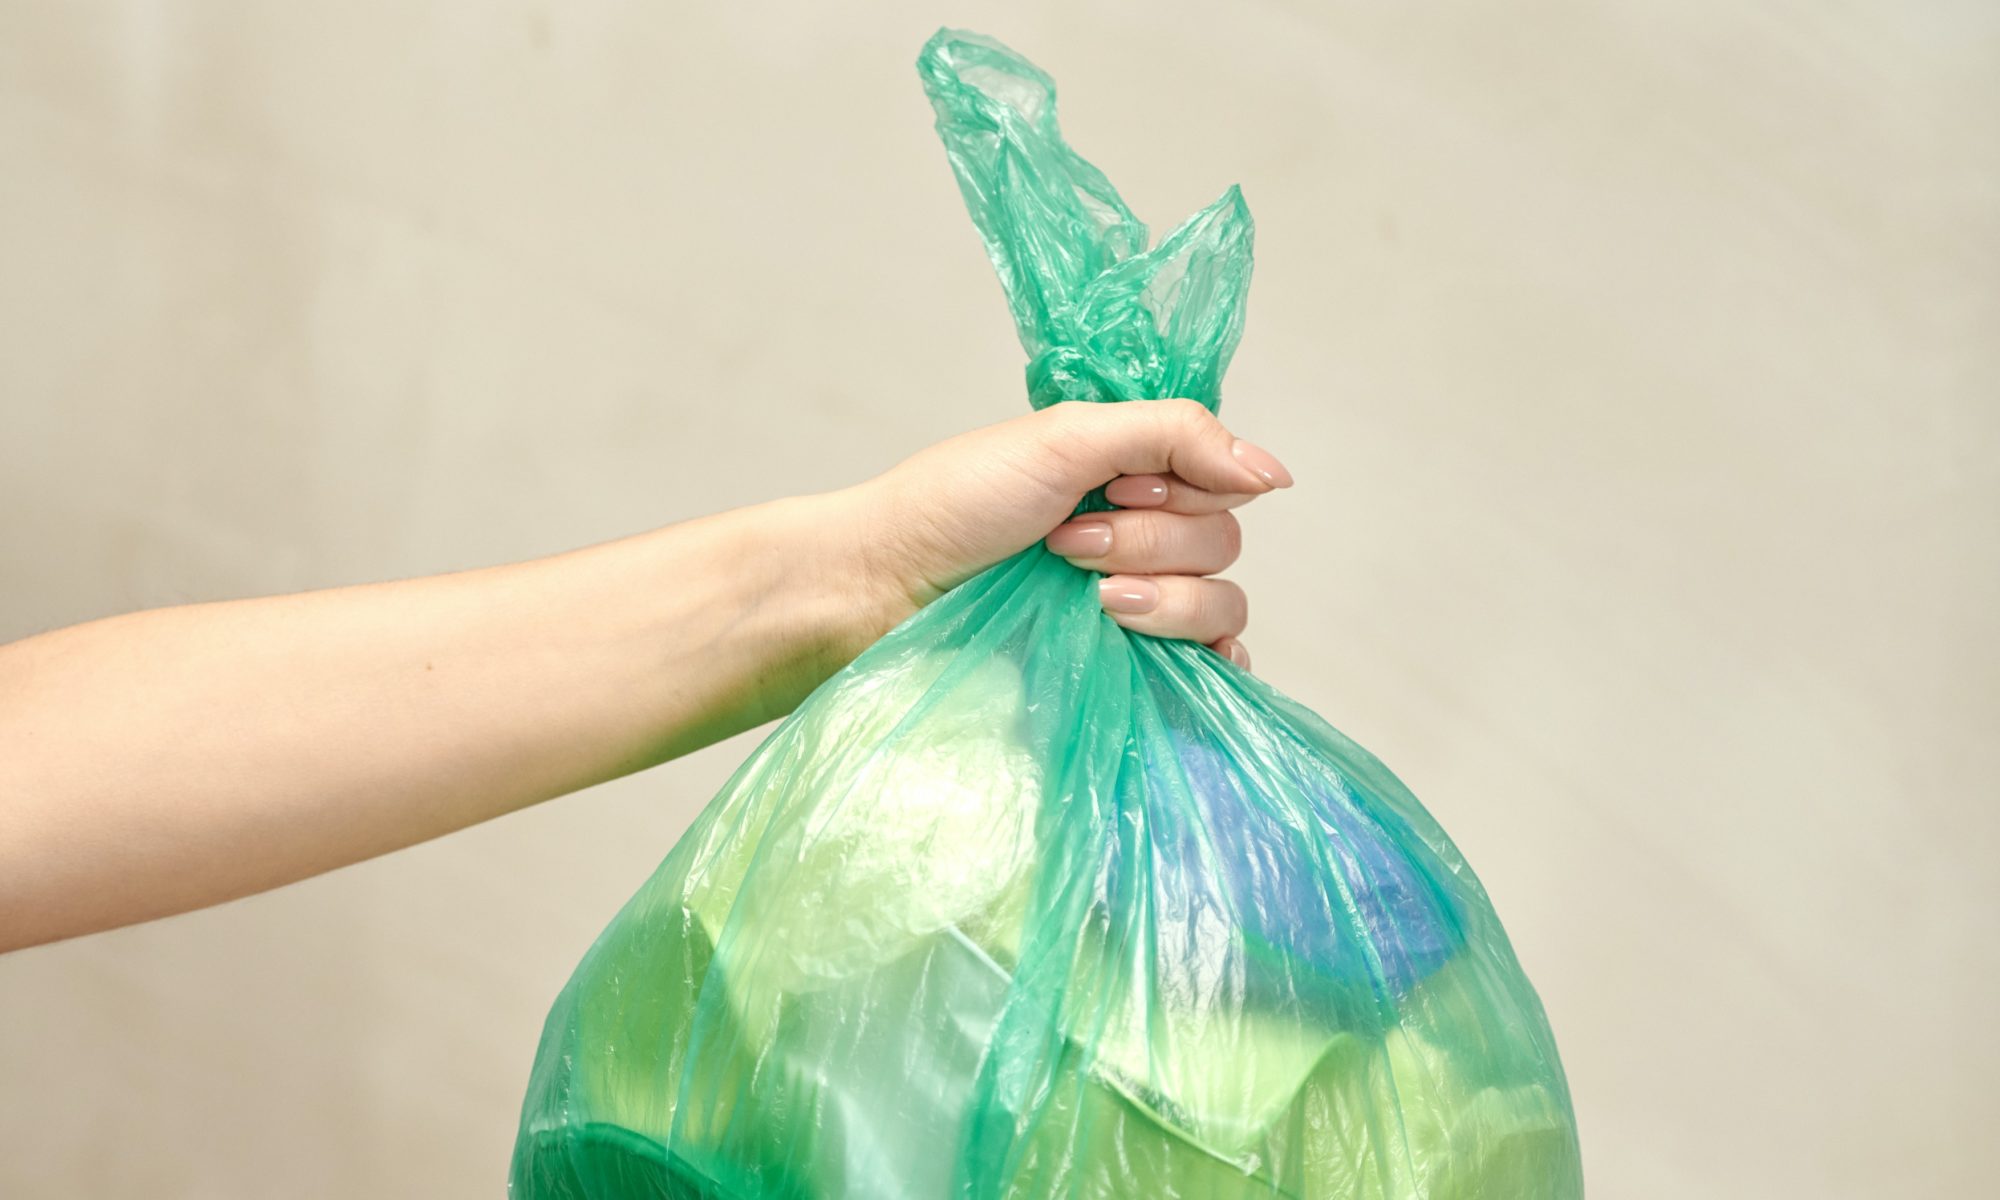 Yardwe Leaf Bag Reusable Garden Waste Bag Garden Tote Bag